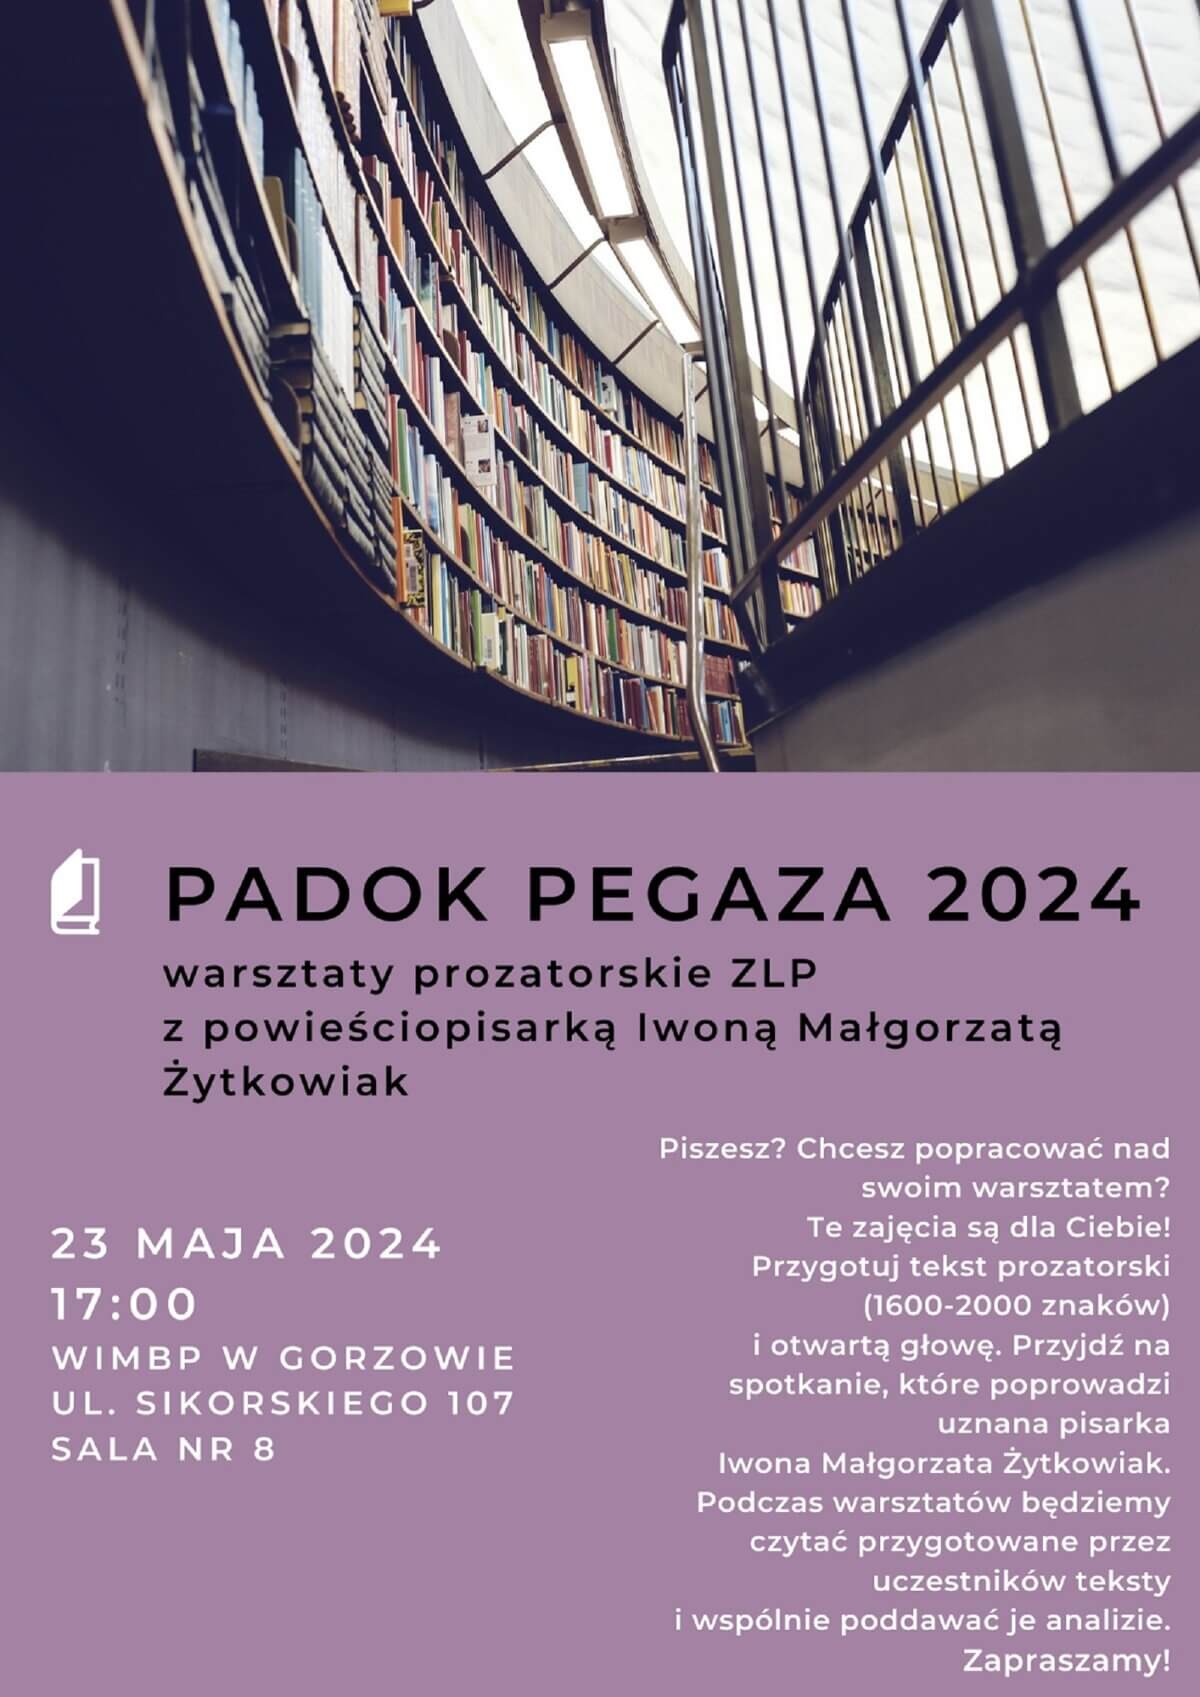 Plakat promujący wydarzenie w odcieniach fioletu z regałami z książkami w tle.